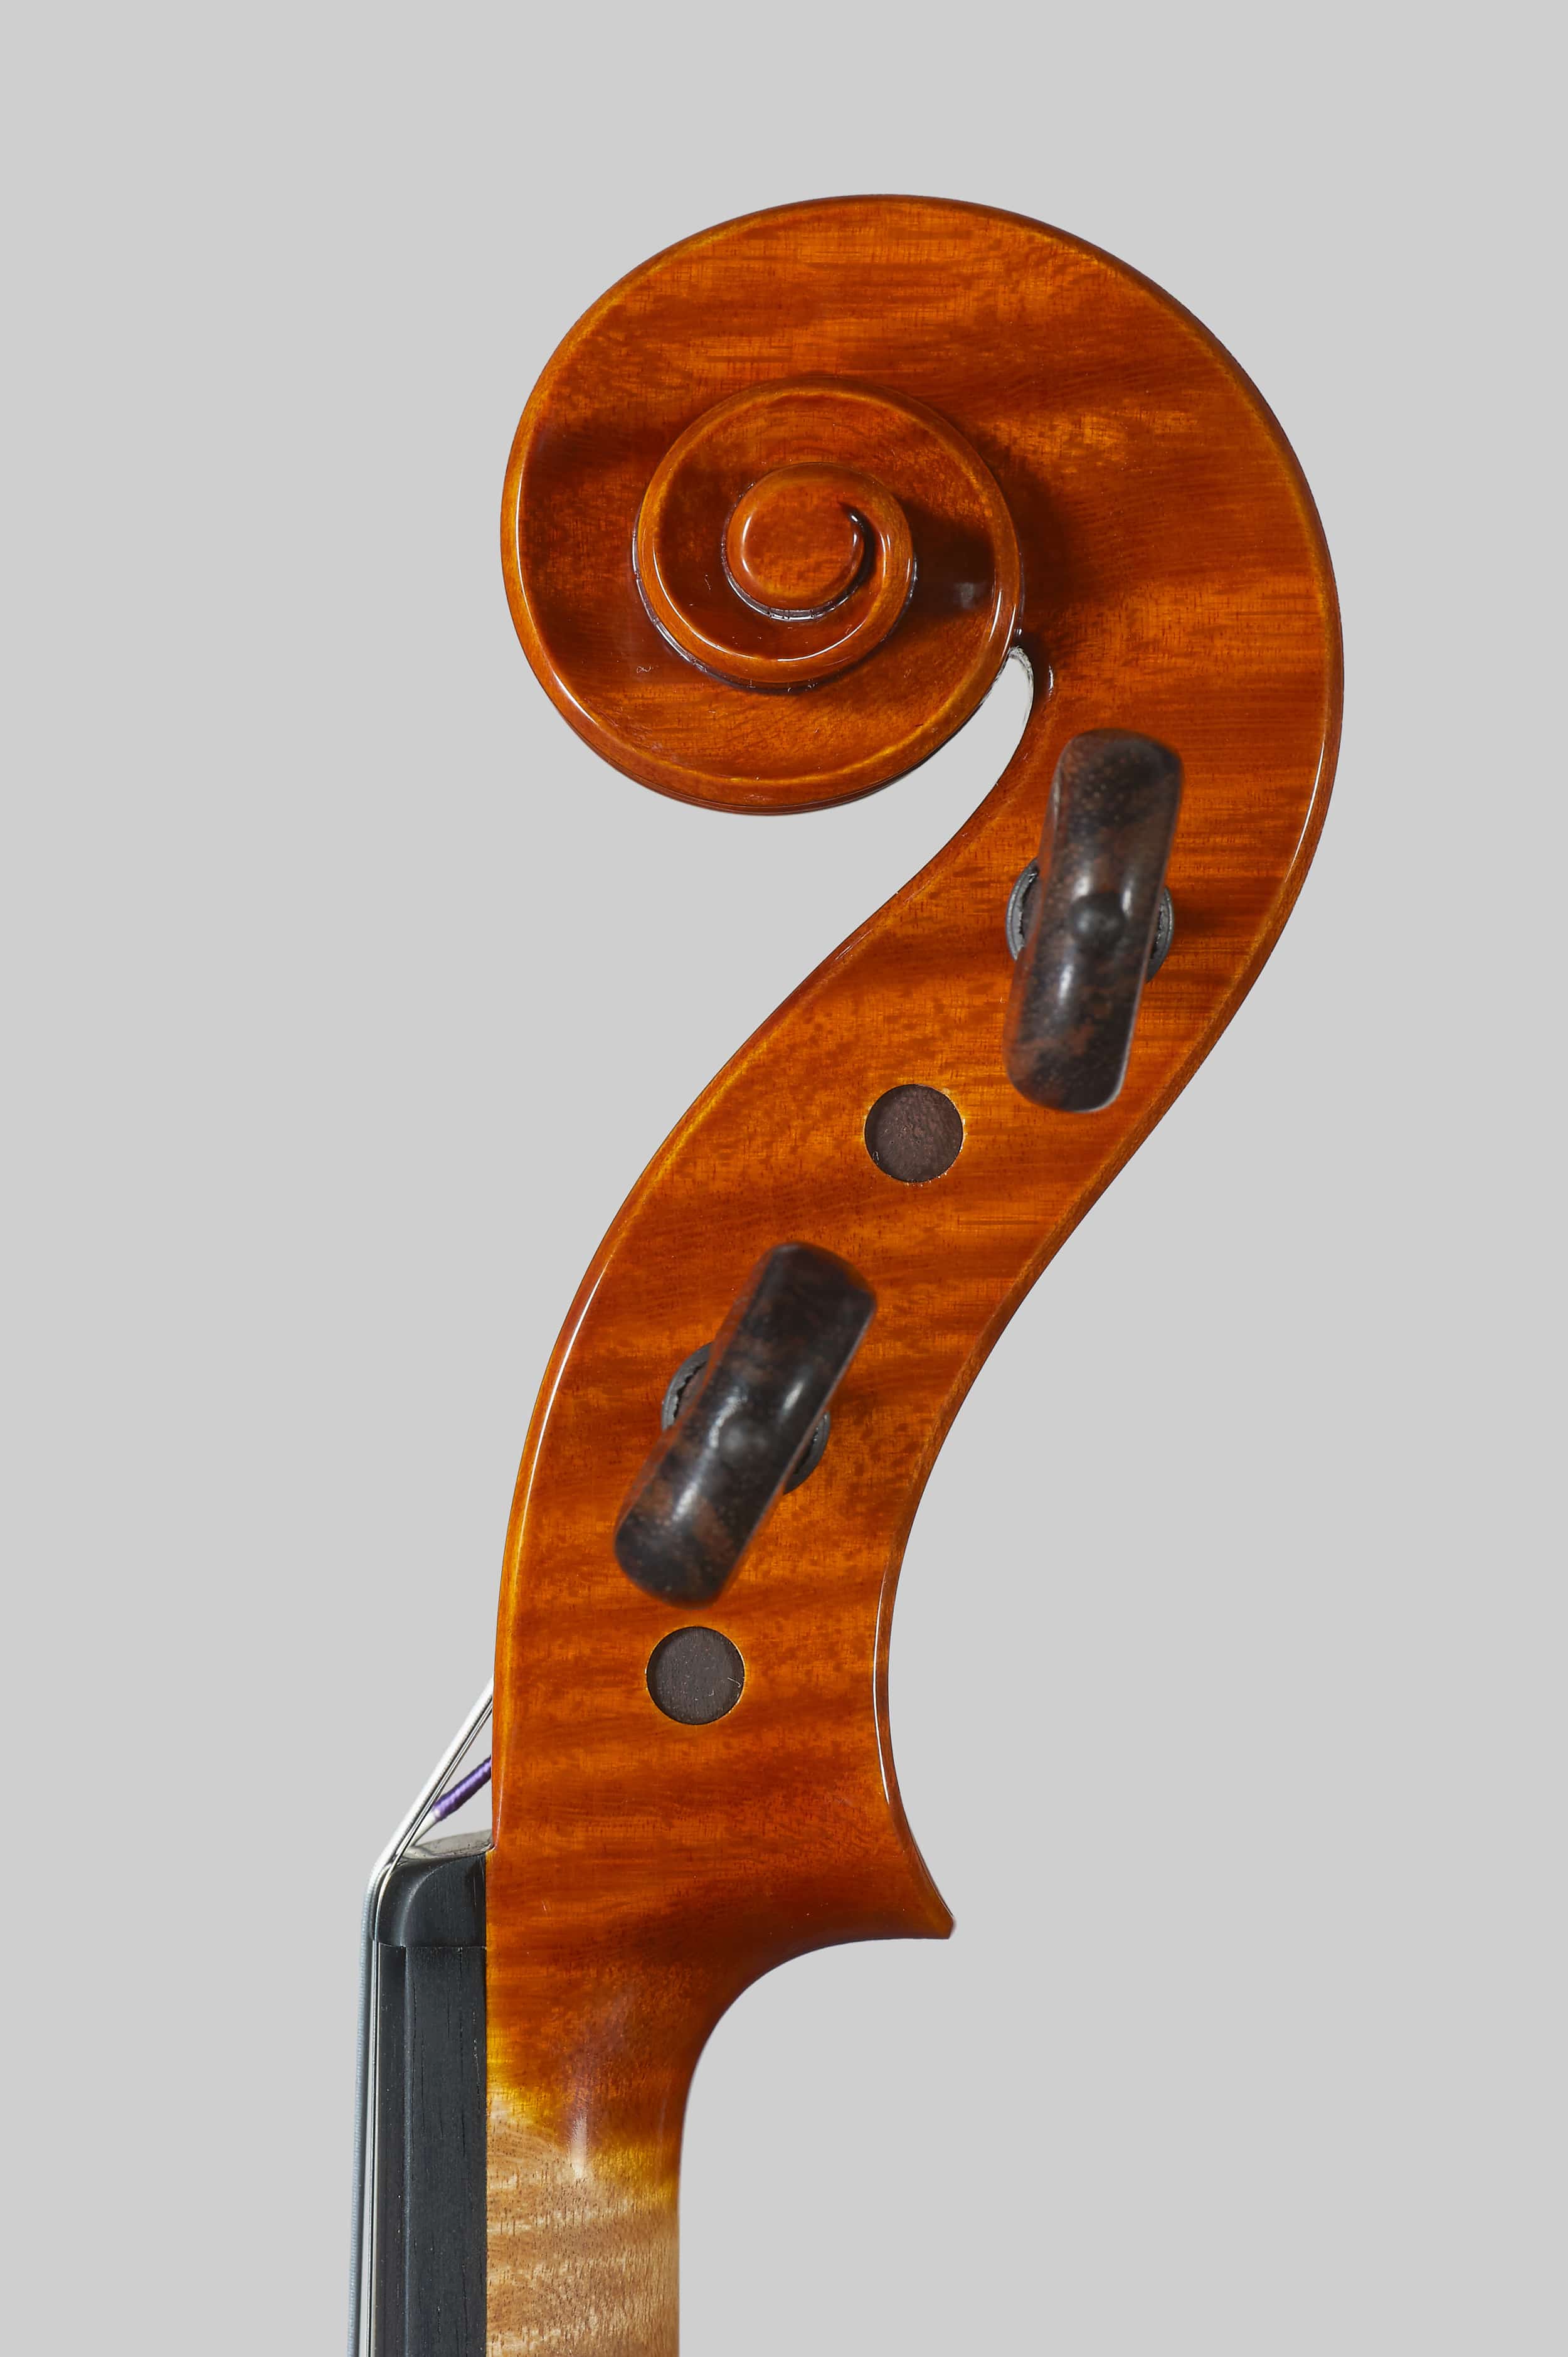 Anno 2015 – Violino modello stile A. Stradivari “Viotti” 1709 - Testa destra